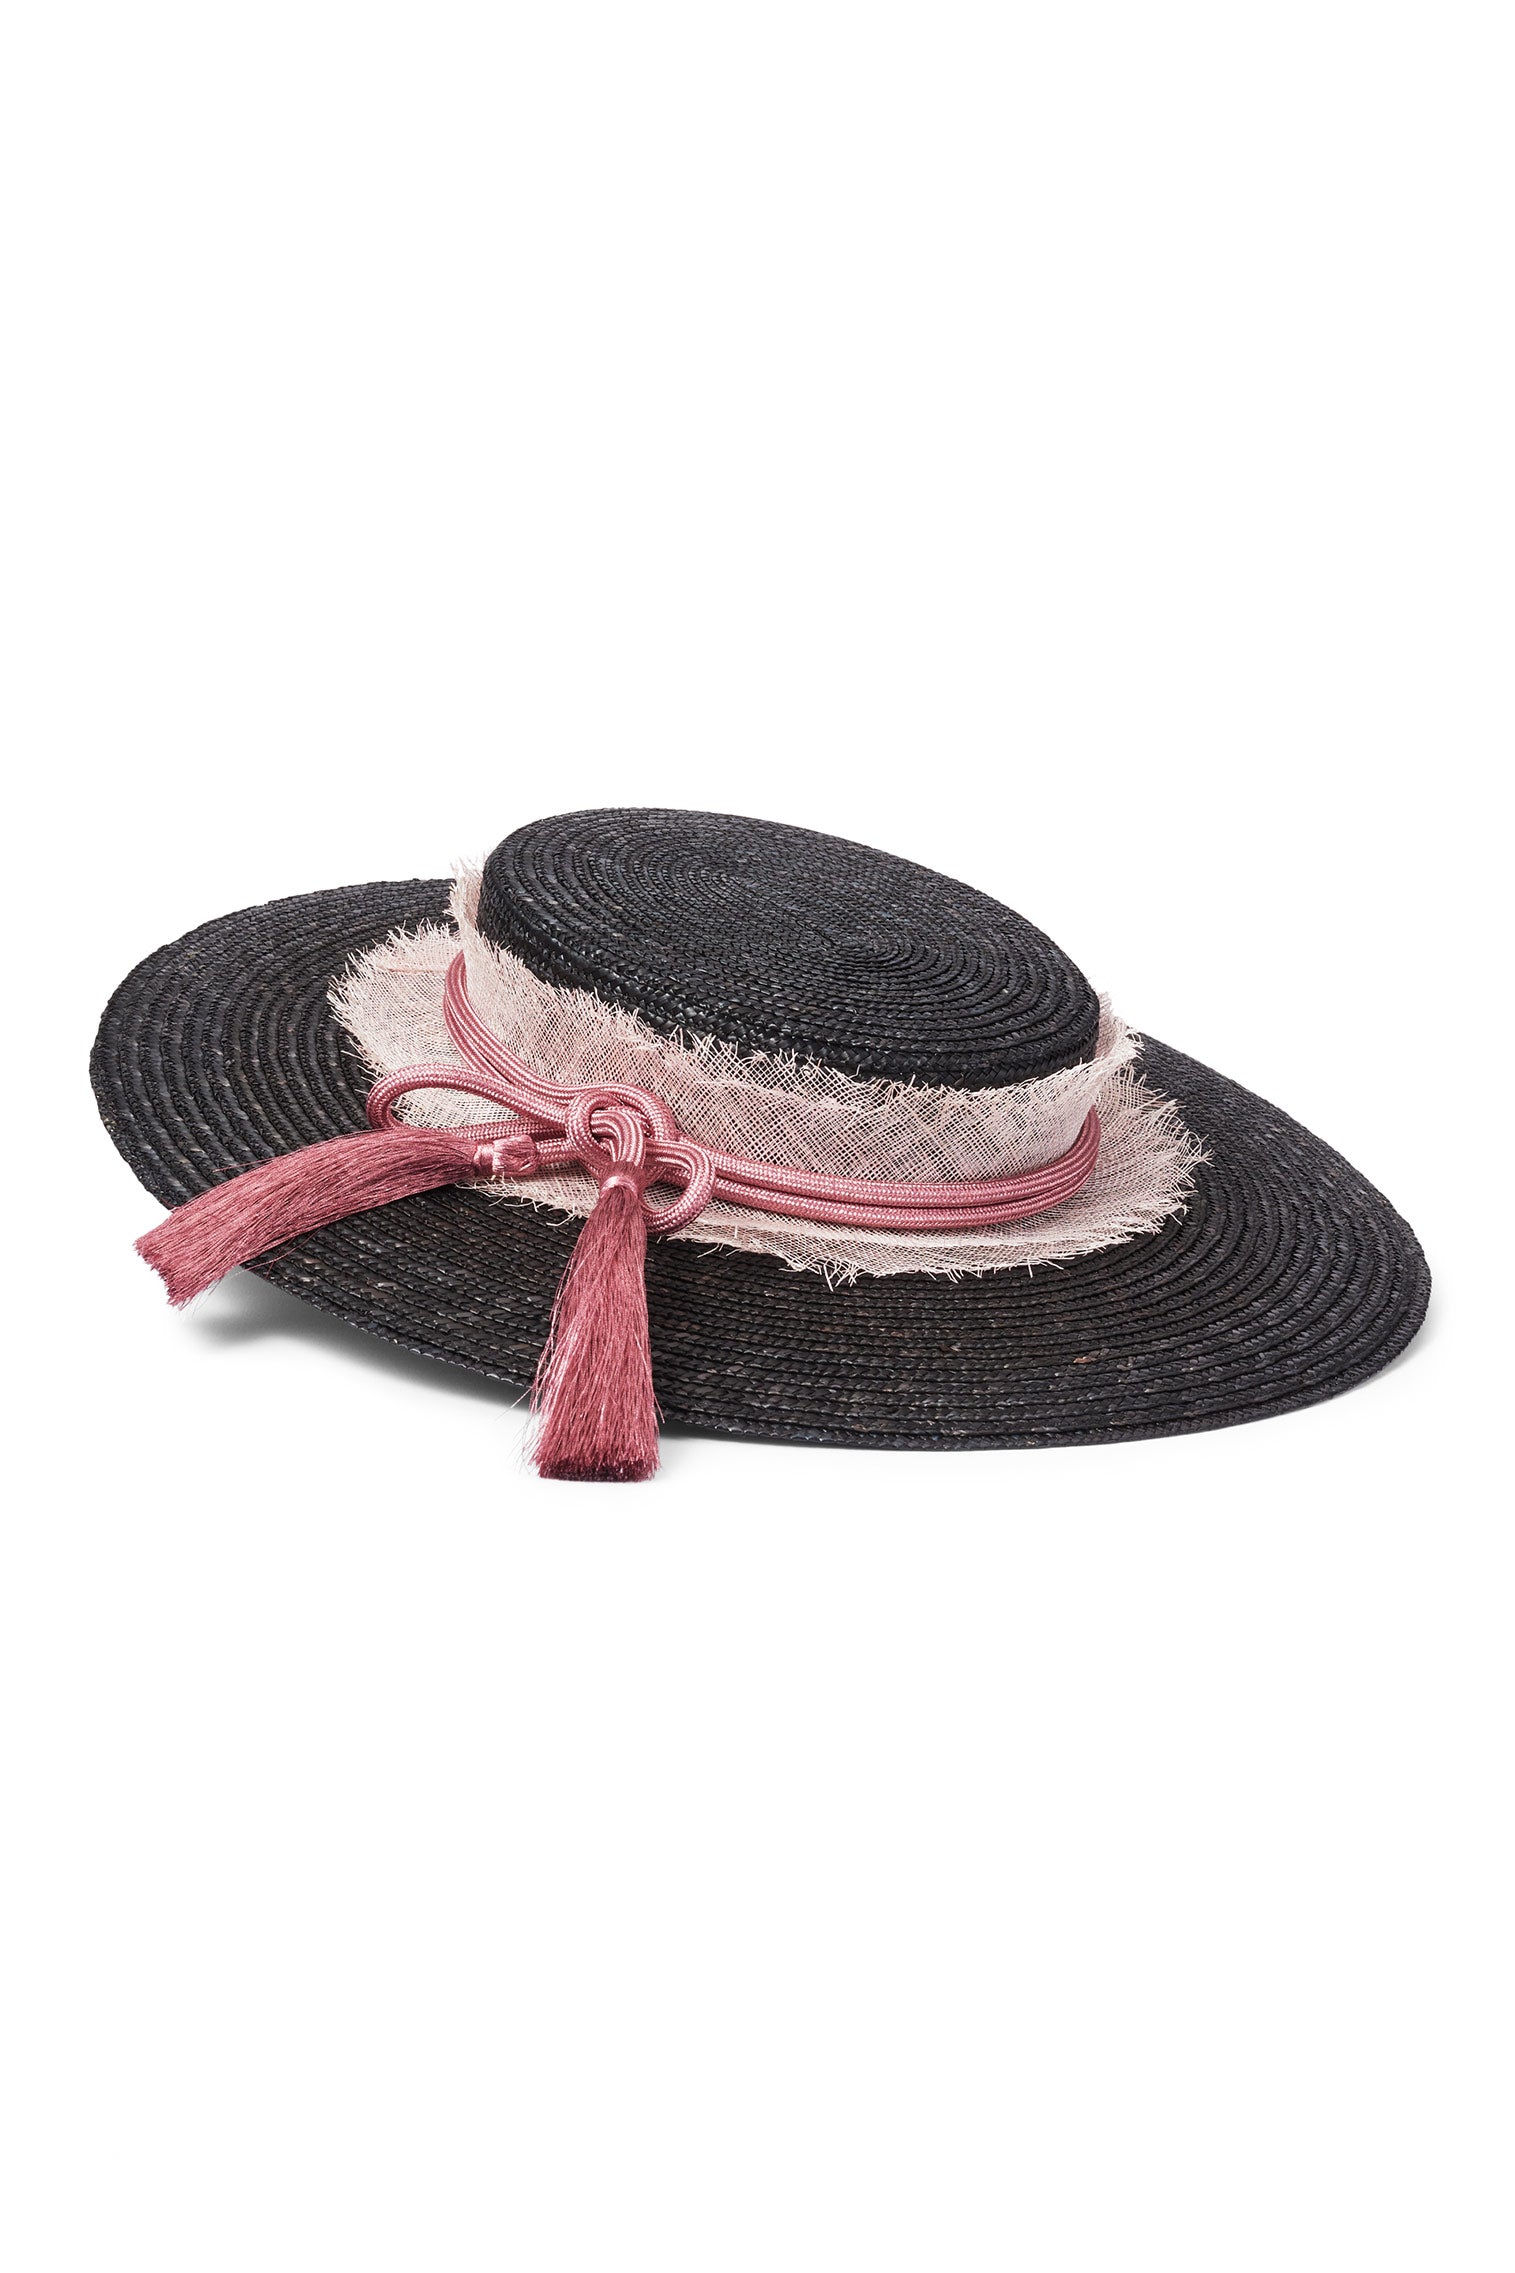 Nevada Boater - Panamas & Sun Hats for Women - Lock & Co. Hatters London UK